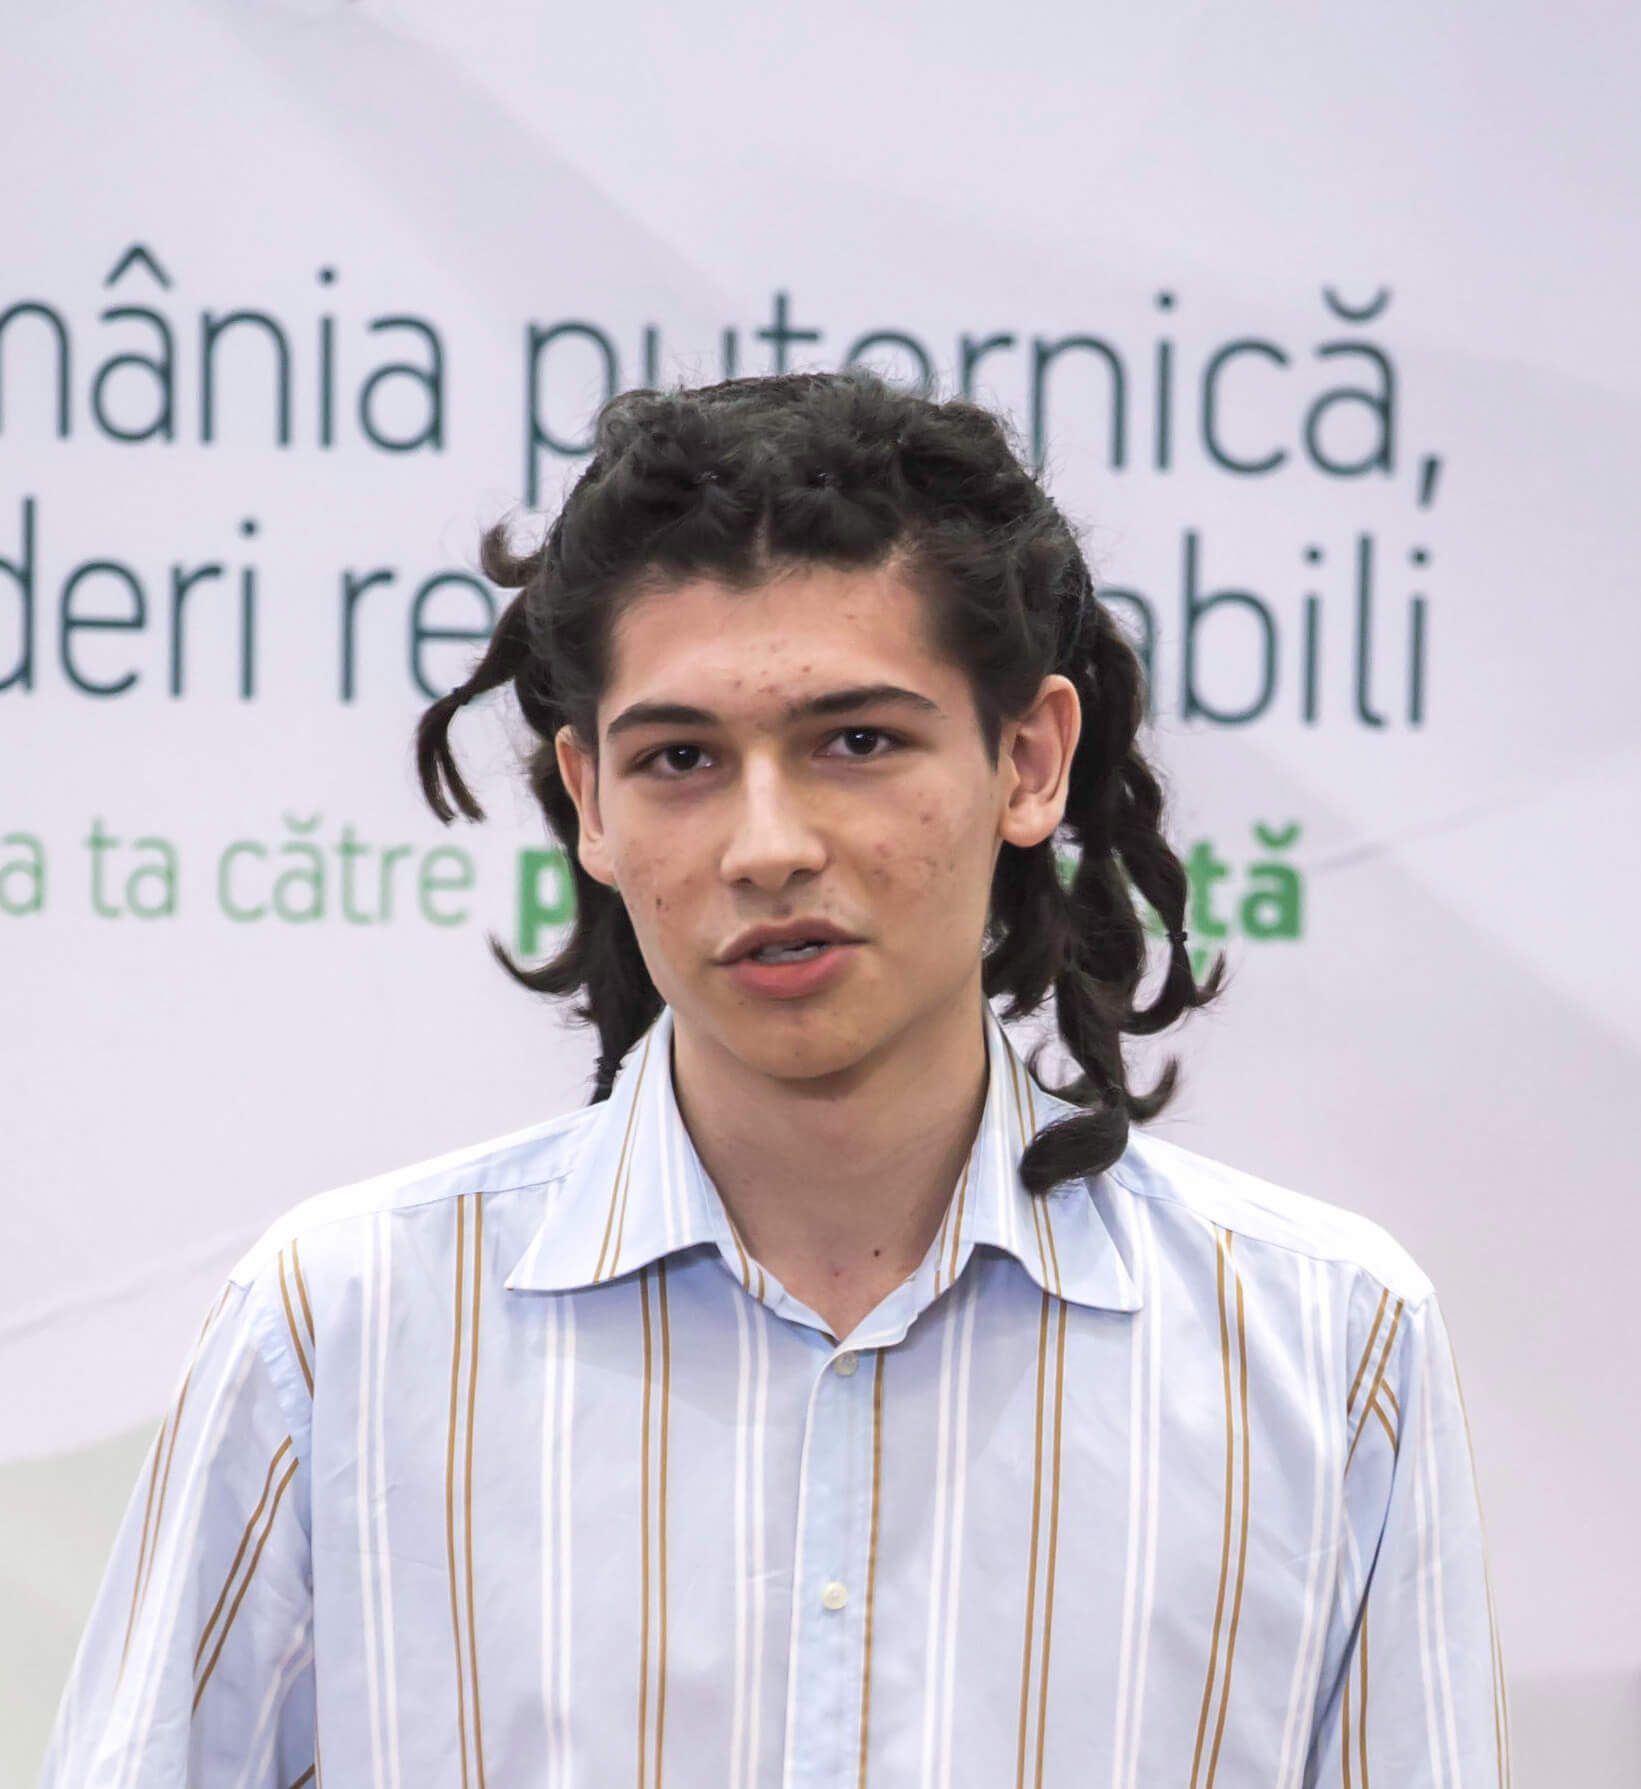 Daniel Mihai Constantin